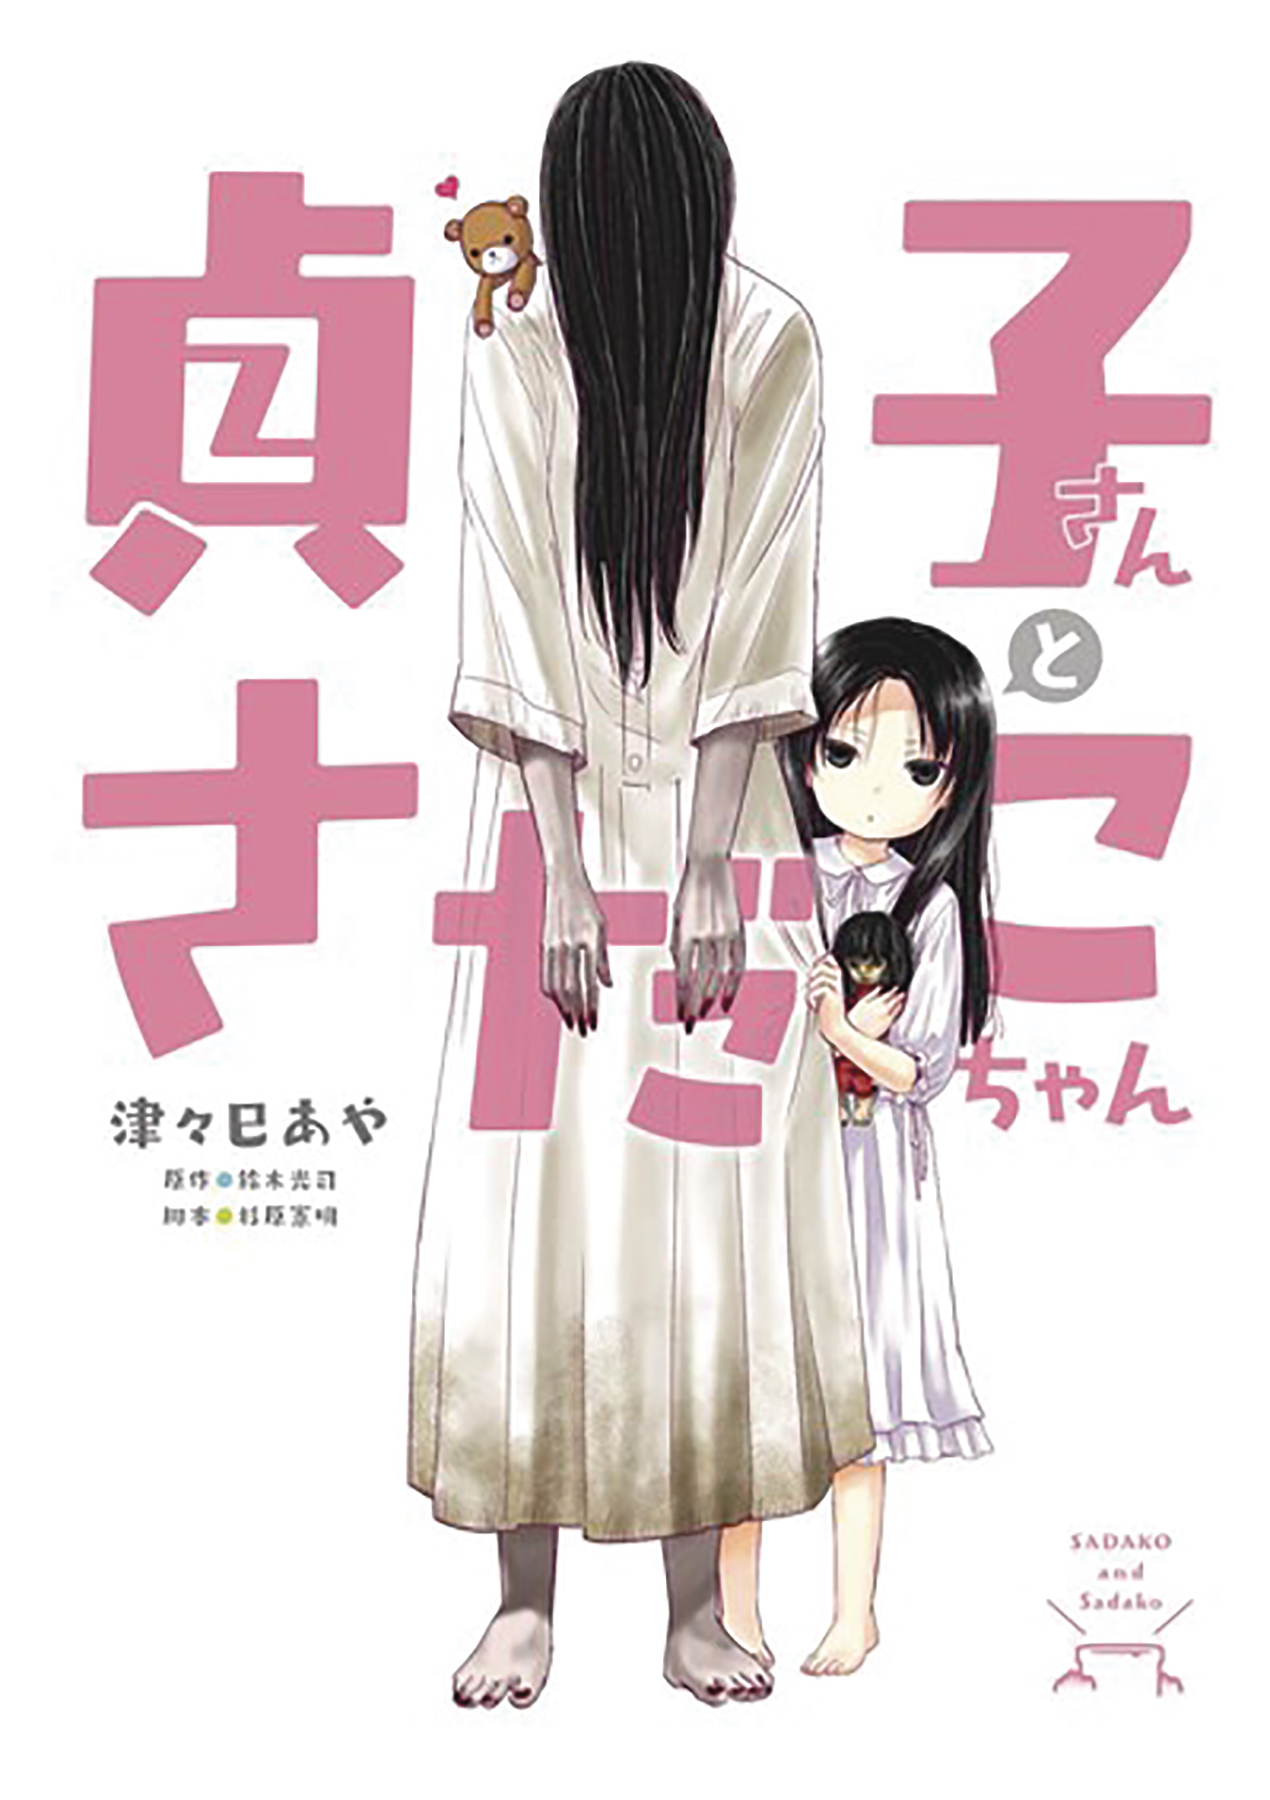 Sadako San & Sadako Chan Graphic Novel